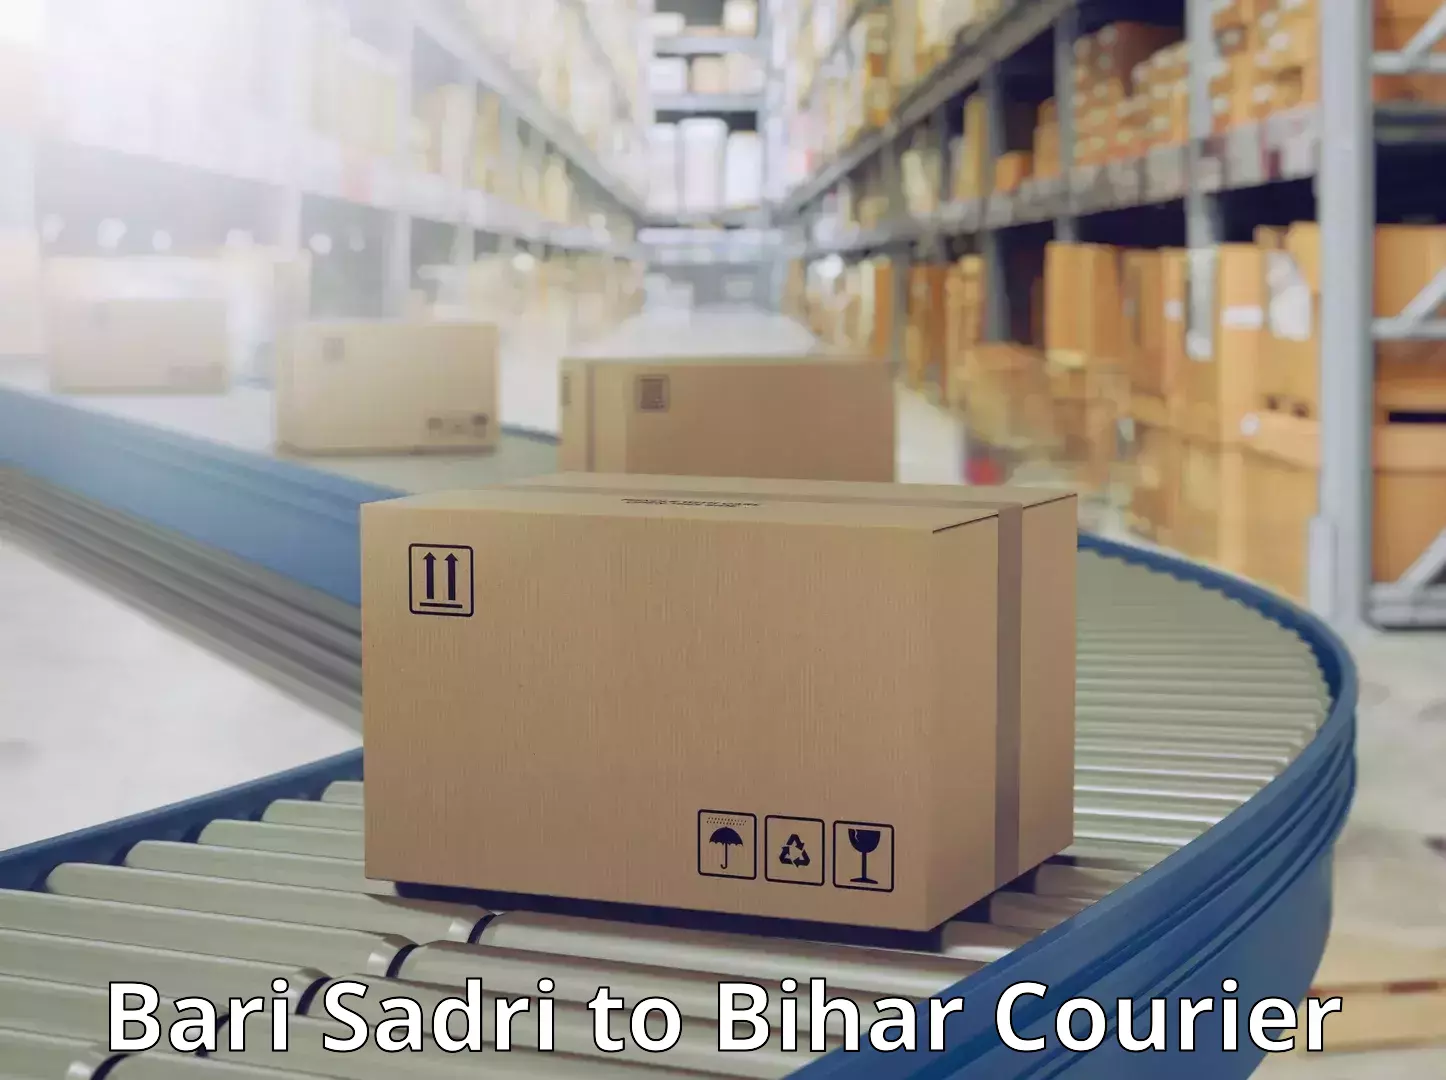 Fast shipping solutions Bari Sadri to Bihar